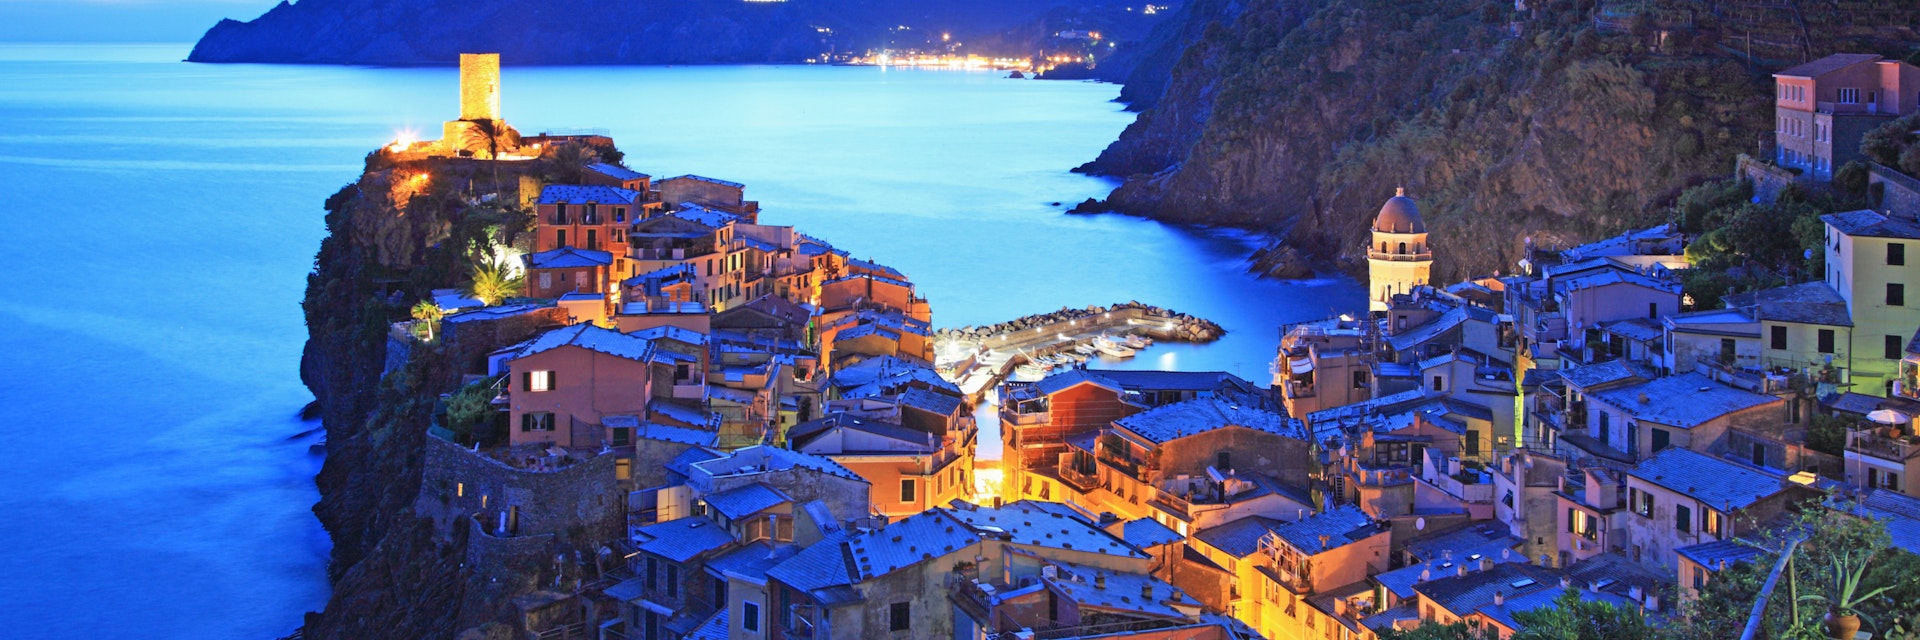 Italy, Cinque Terre, Vernazza